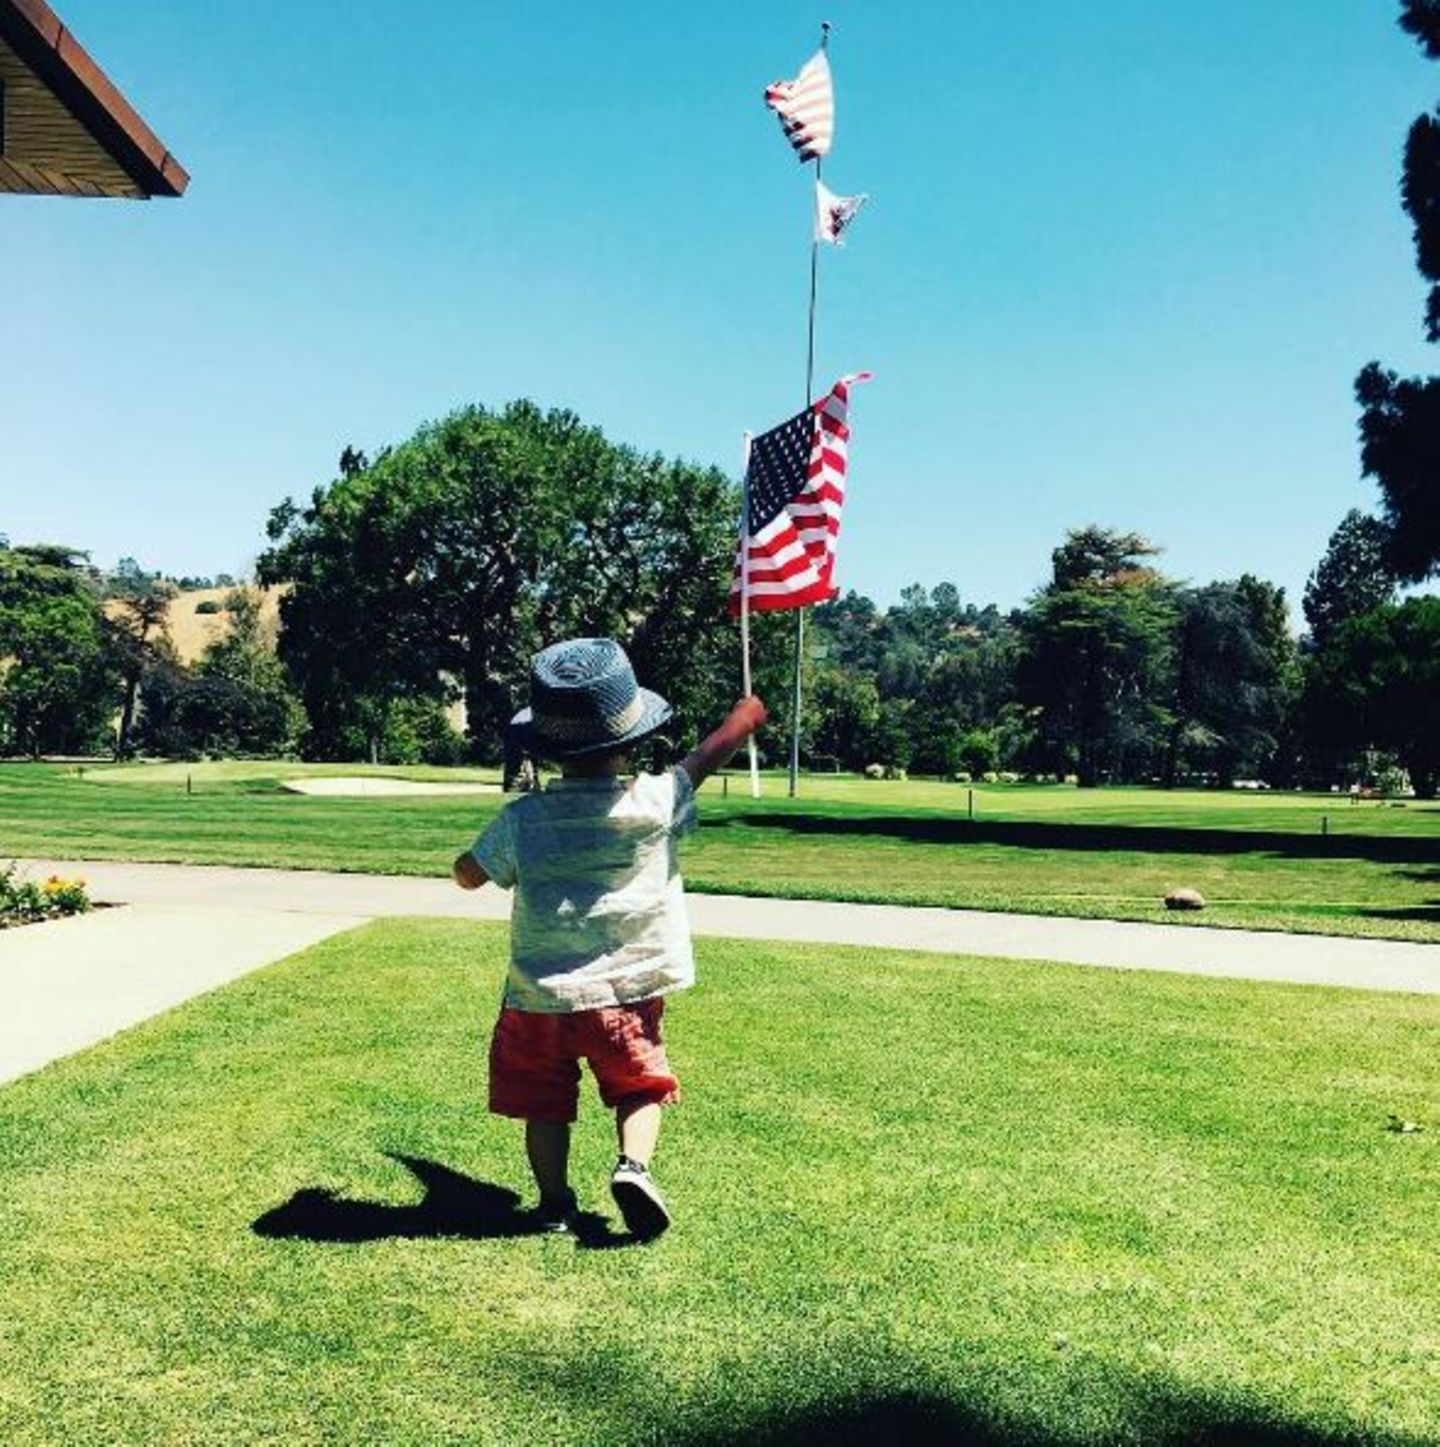 4. Juli 2016  Wie putzig! Justin Timberlake postet am amerikanischen Independence Day (Unabhängigkeitstag) einen seltenen Schnappschuss von Sohnemann Silas. Zwar sieht man den kleinen Racker nur von hinten, aber mit Hut und Flagge ist er trotzdem ein niedlicher Hingucker.